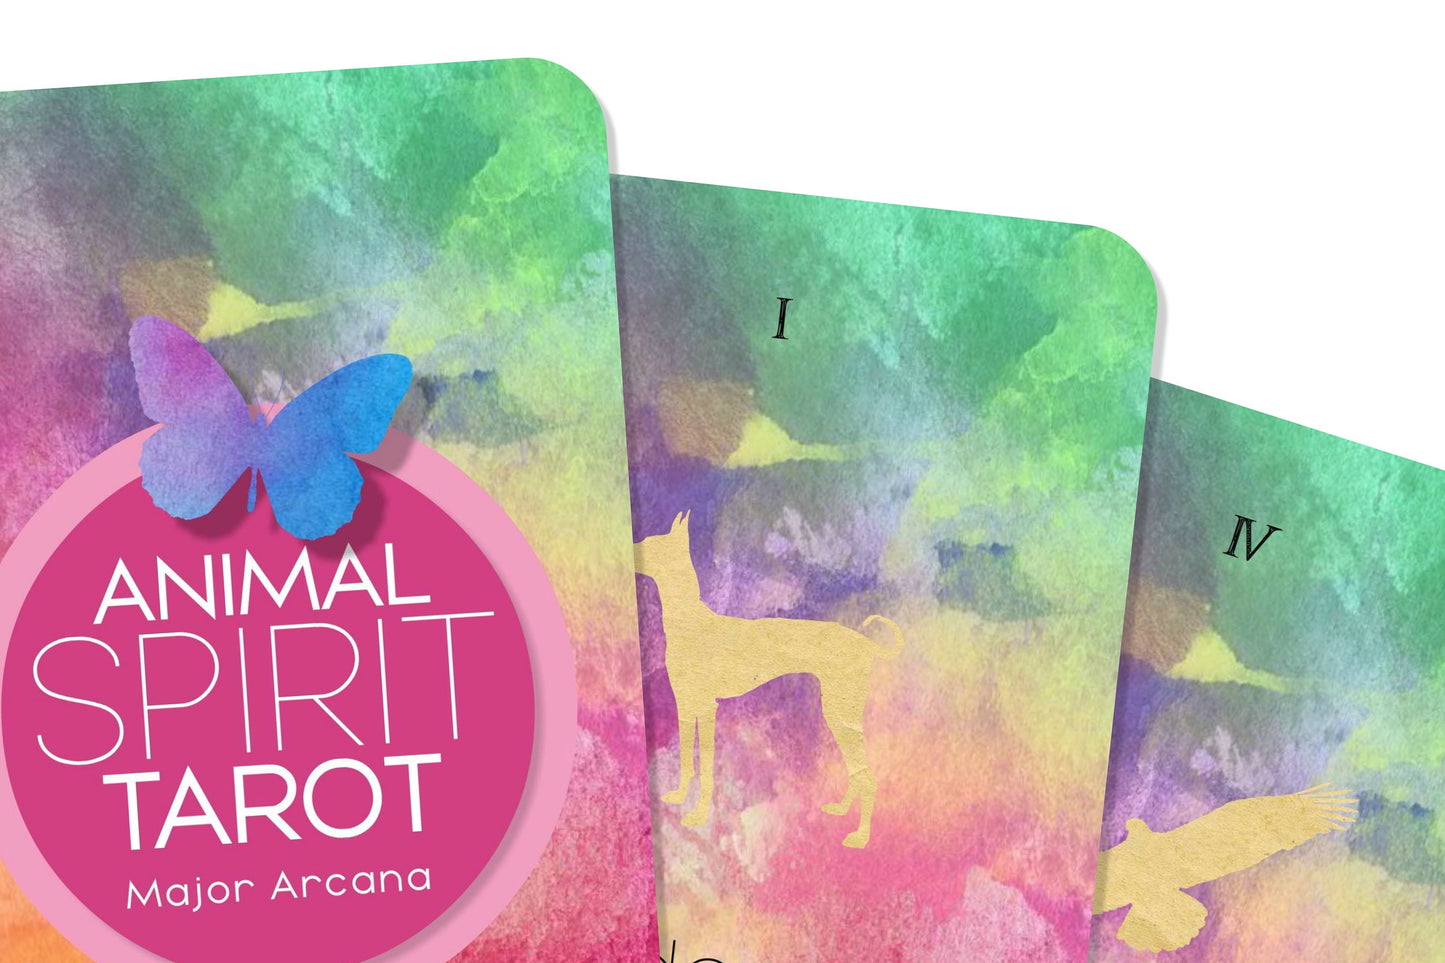 Personalized Tarot - Animal Spirit Tarot  - Major Arcana Tarot Cards